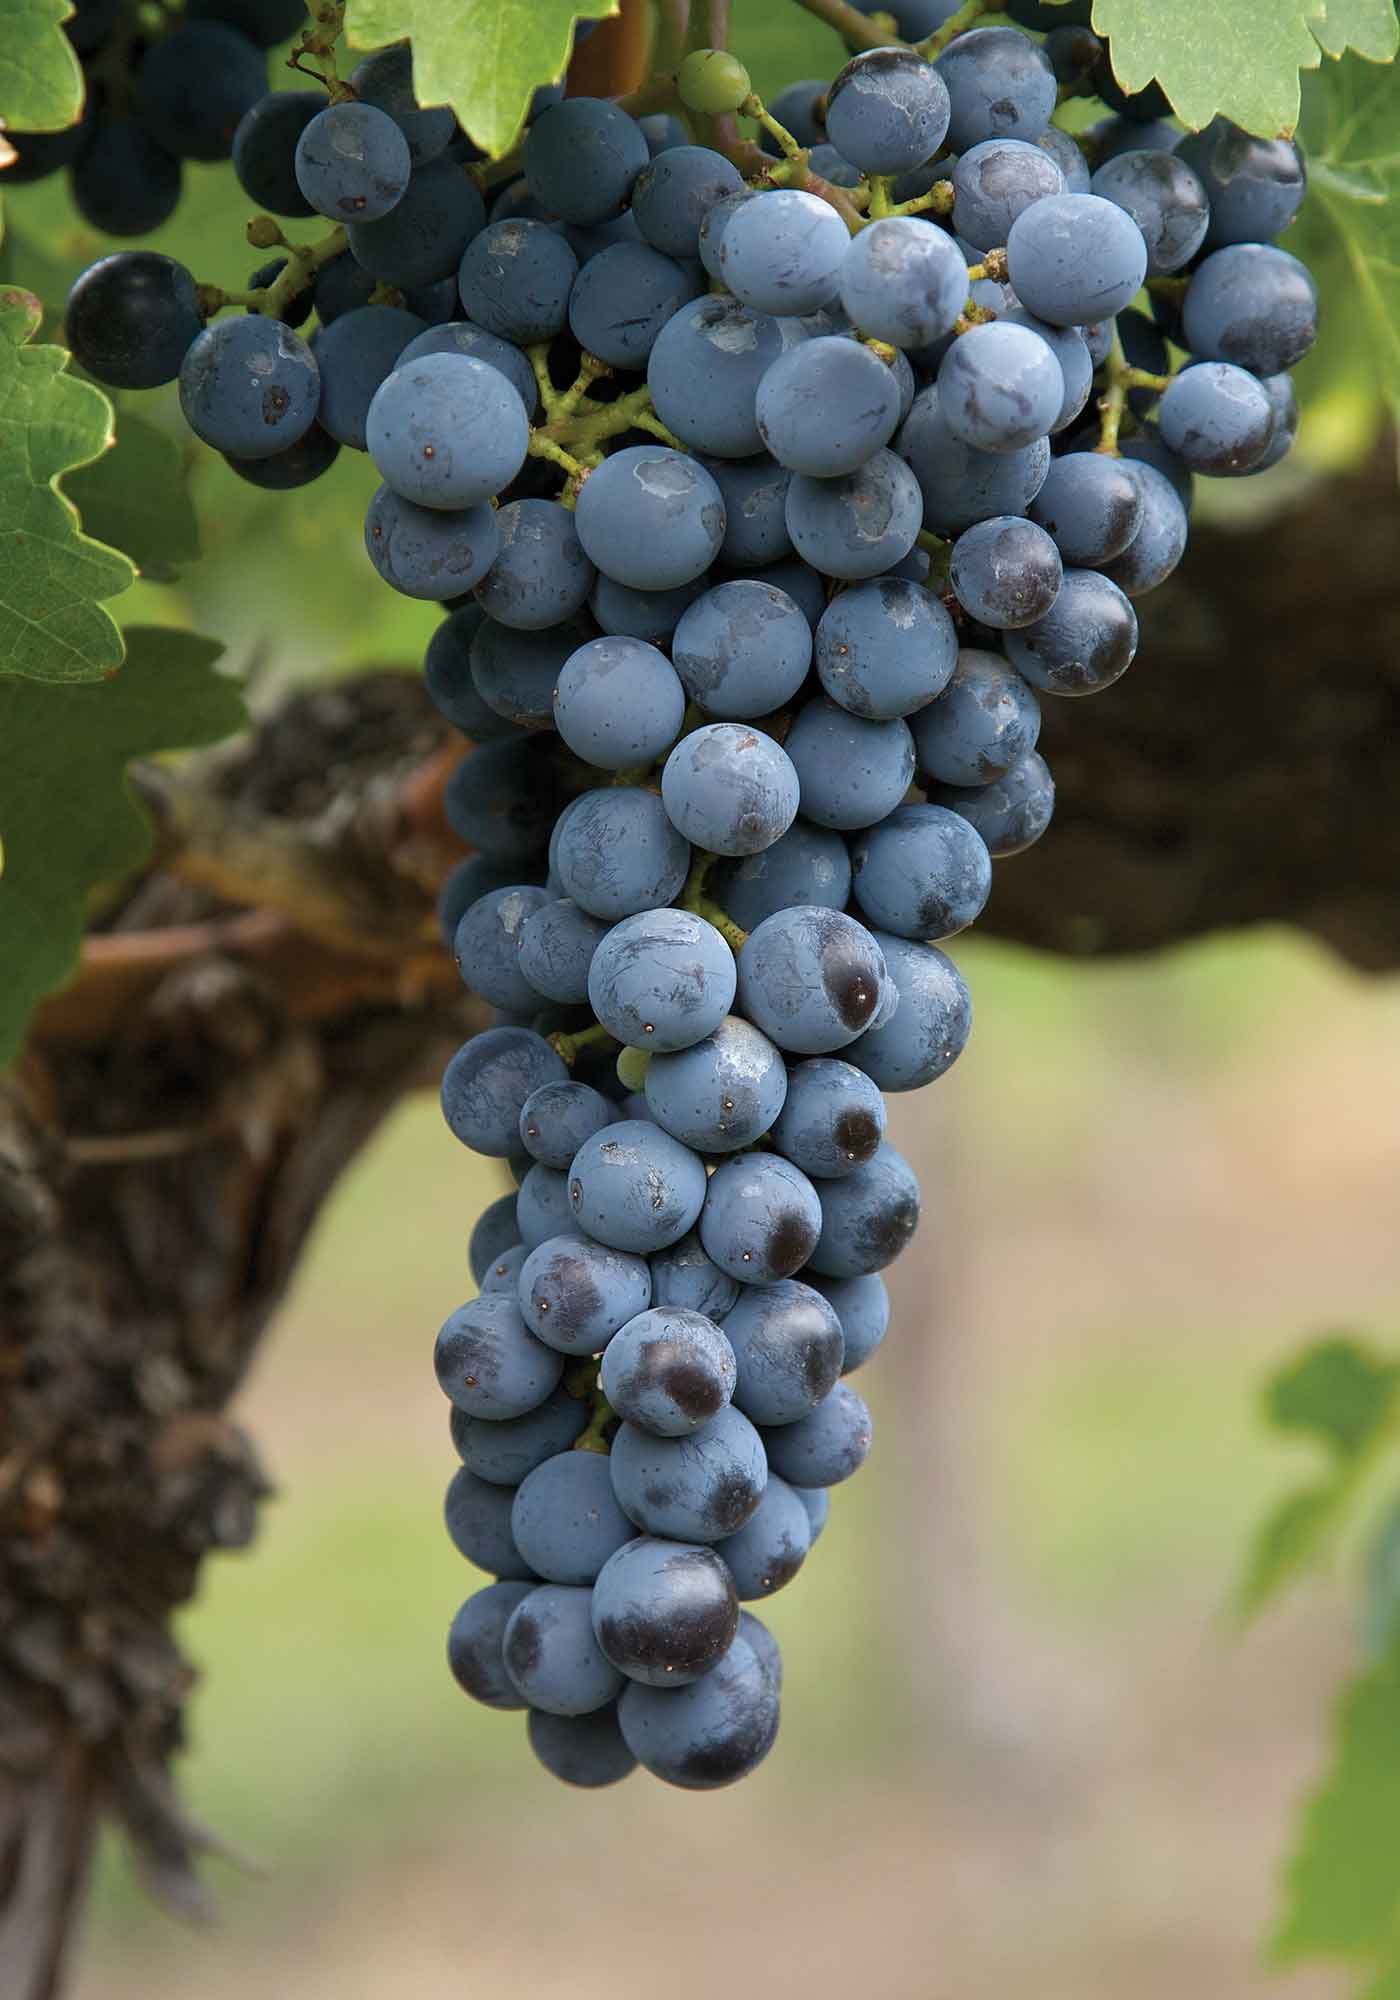 Merlot wine grapes ready for harvest